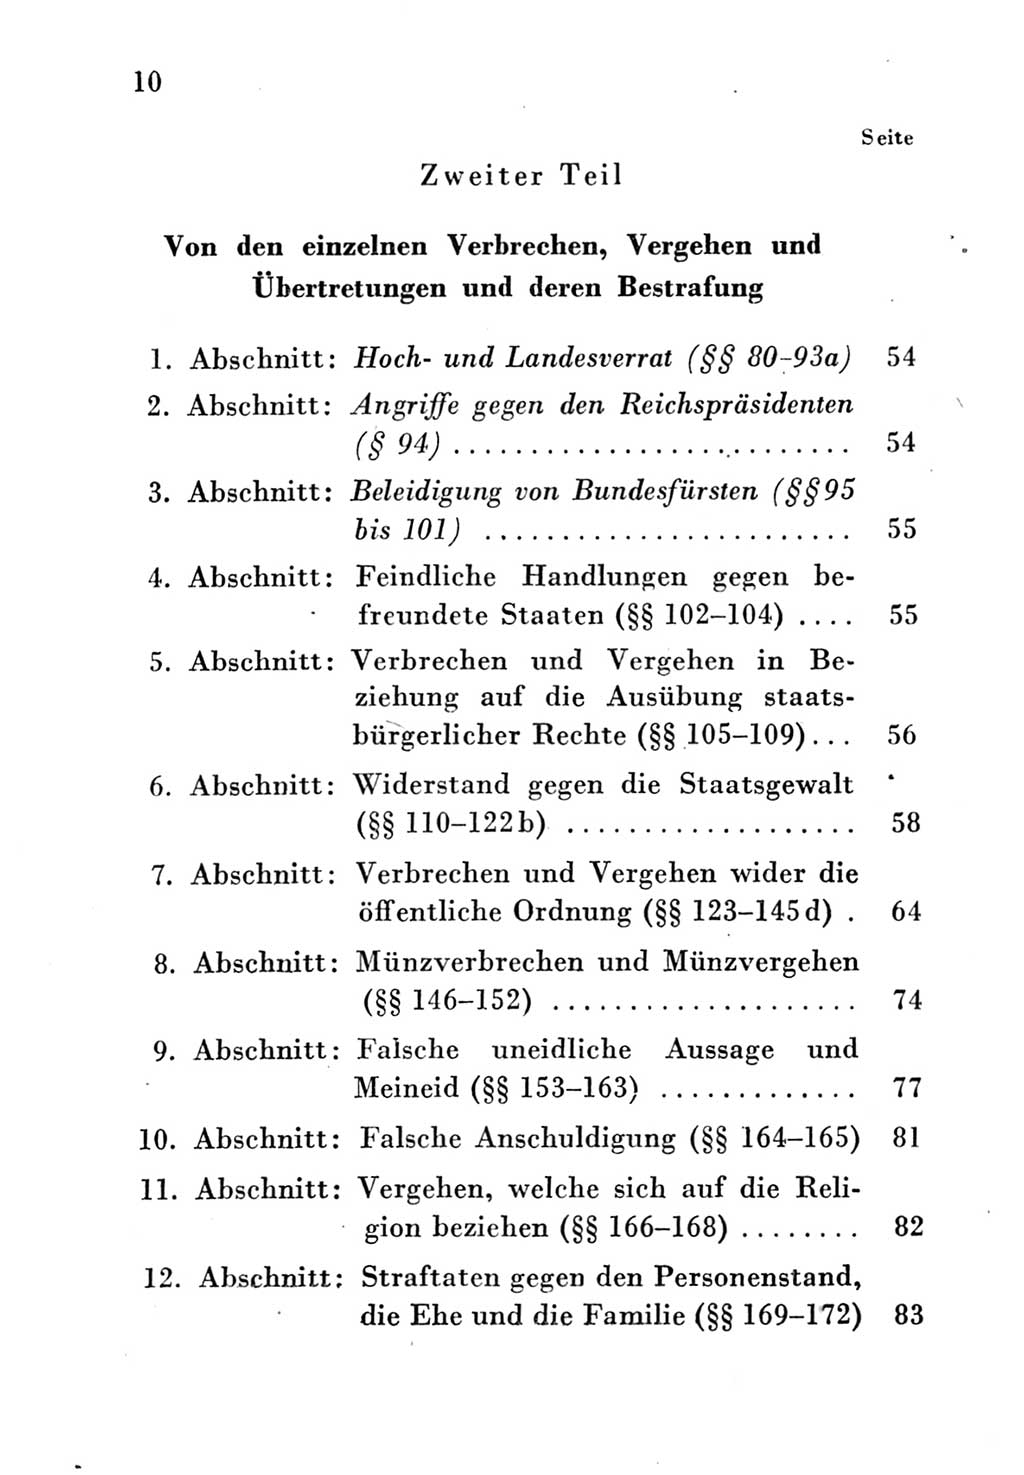 Strafgesetzbuch (StGB) und andere Strafgesetze [Deutsche Demokratische Republik (DDR)] 1951, Seite 10 (StGB Strafges. DDR 1951, S. 10)